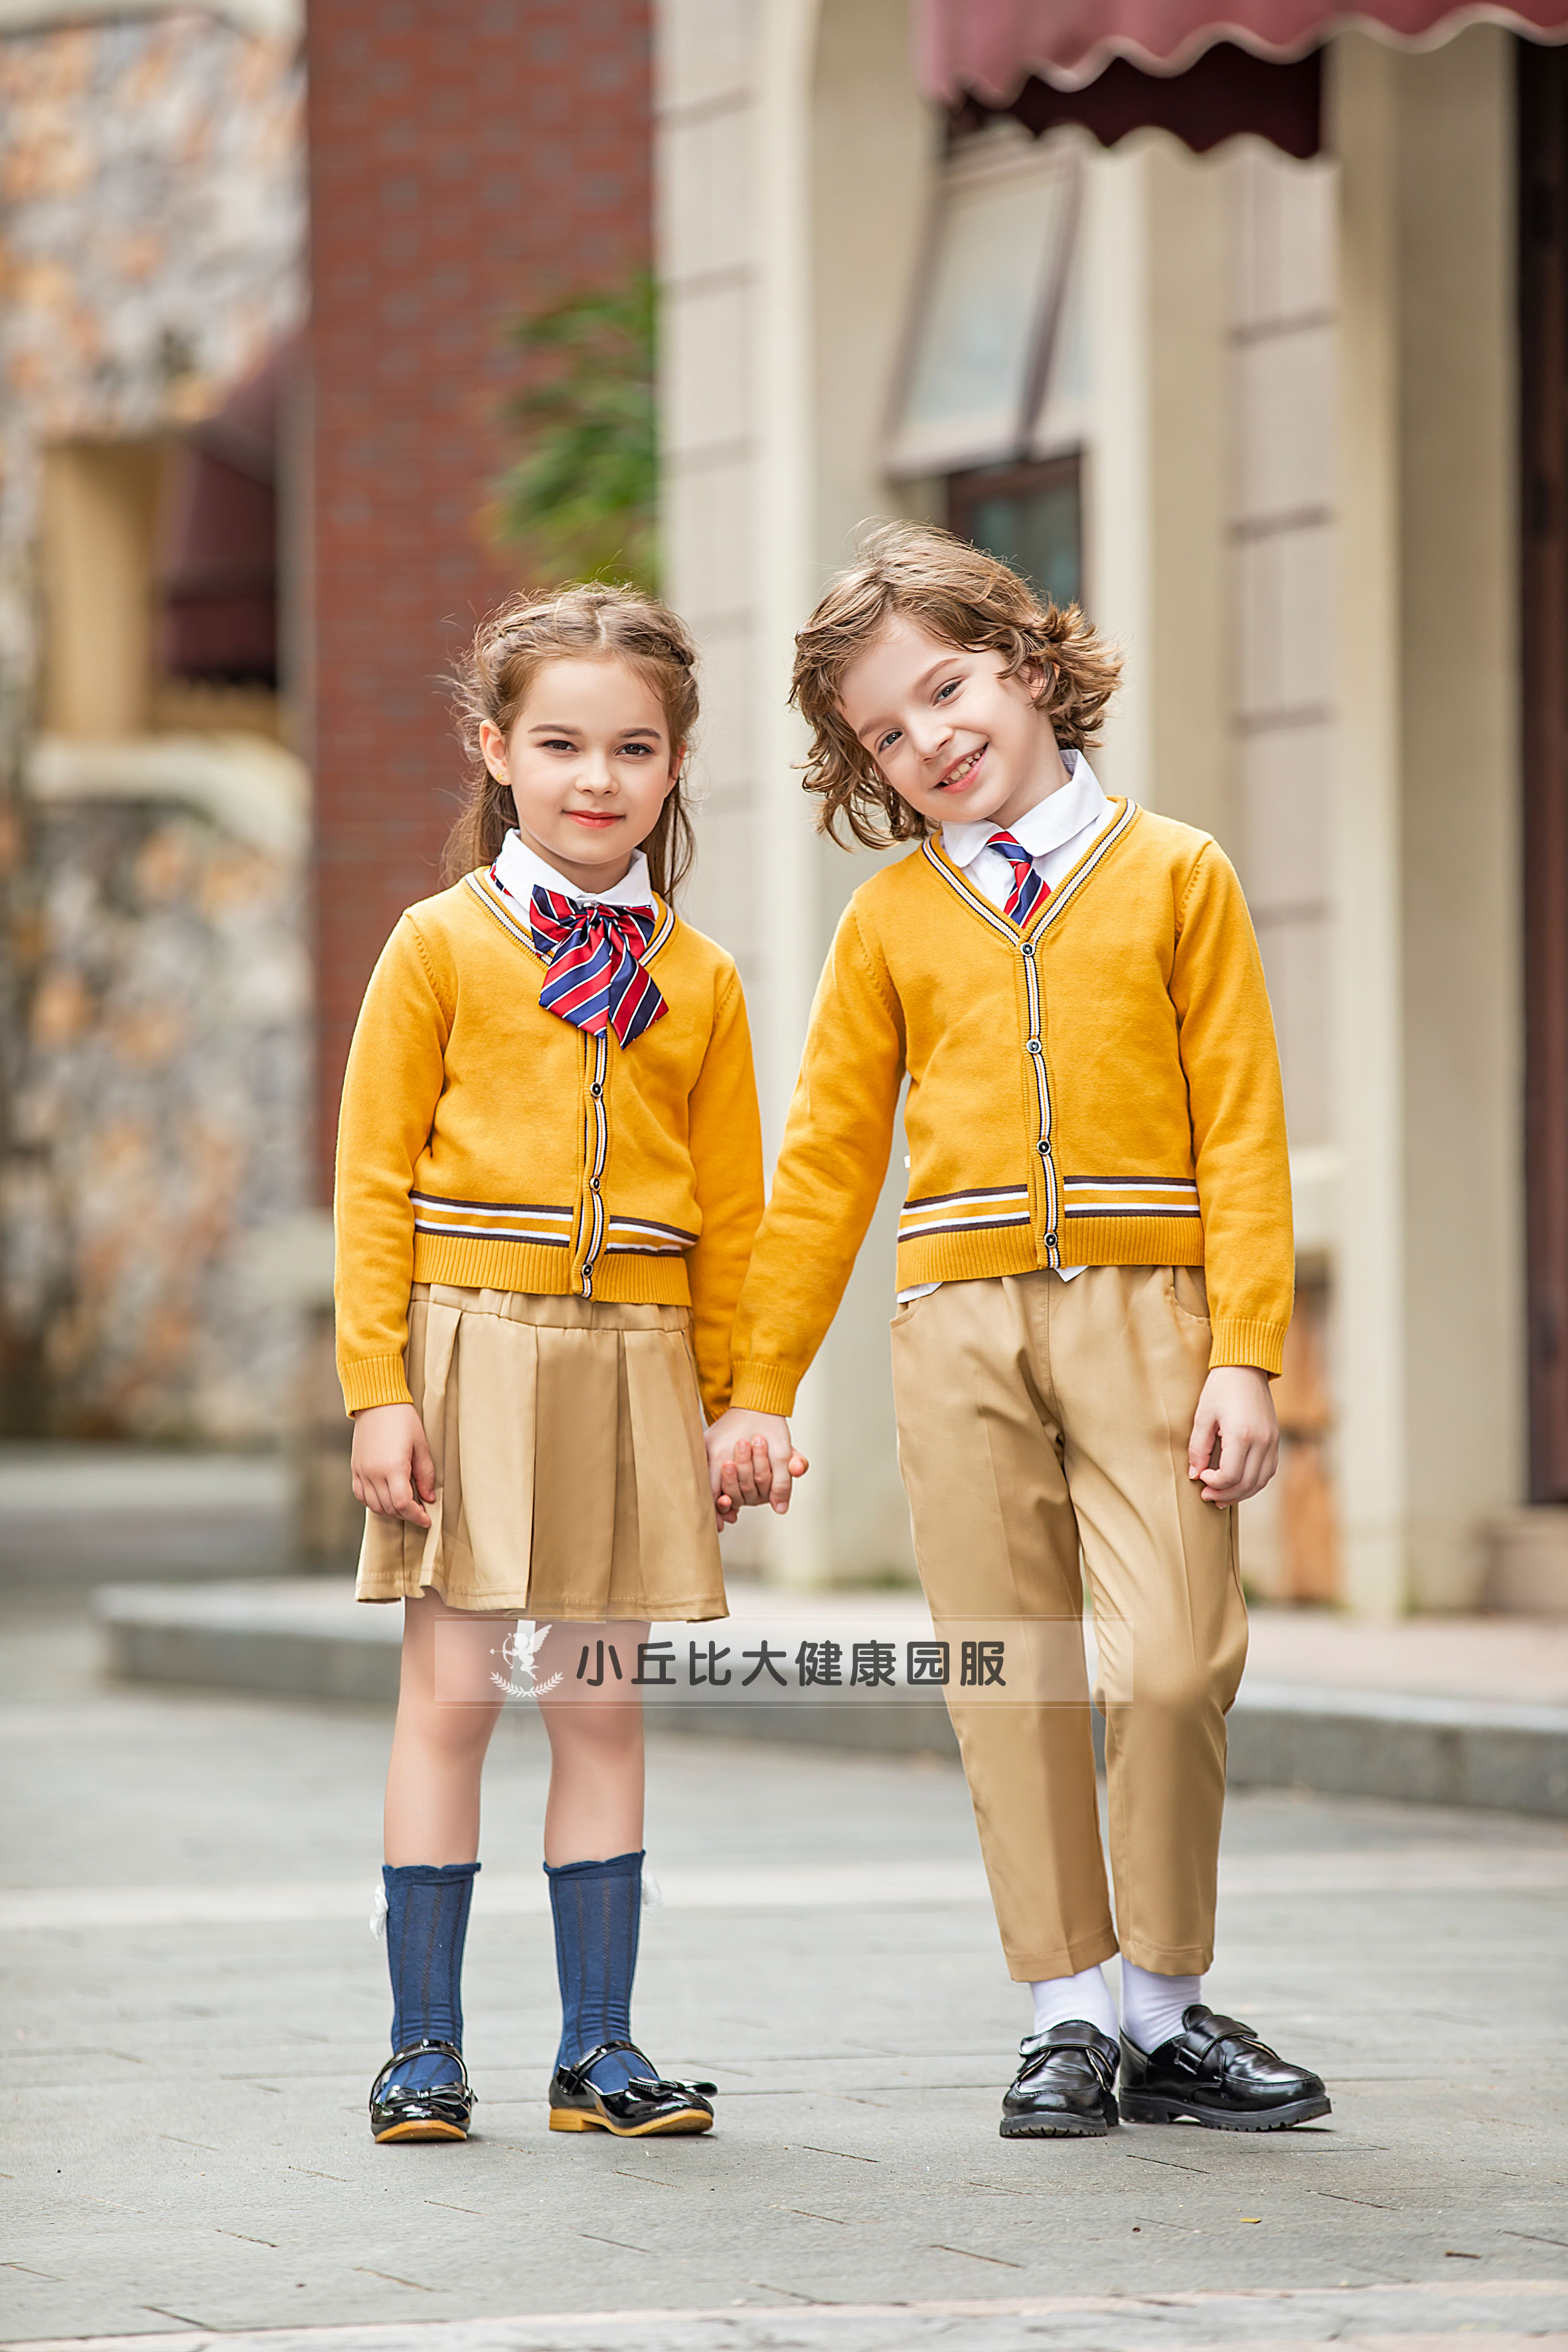 黄色夏季幼儿园园服-幼儿园运动服-深圳迪斯伊儿服装公司